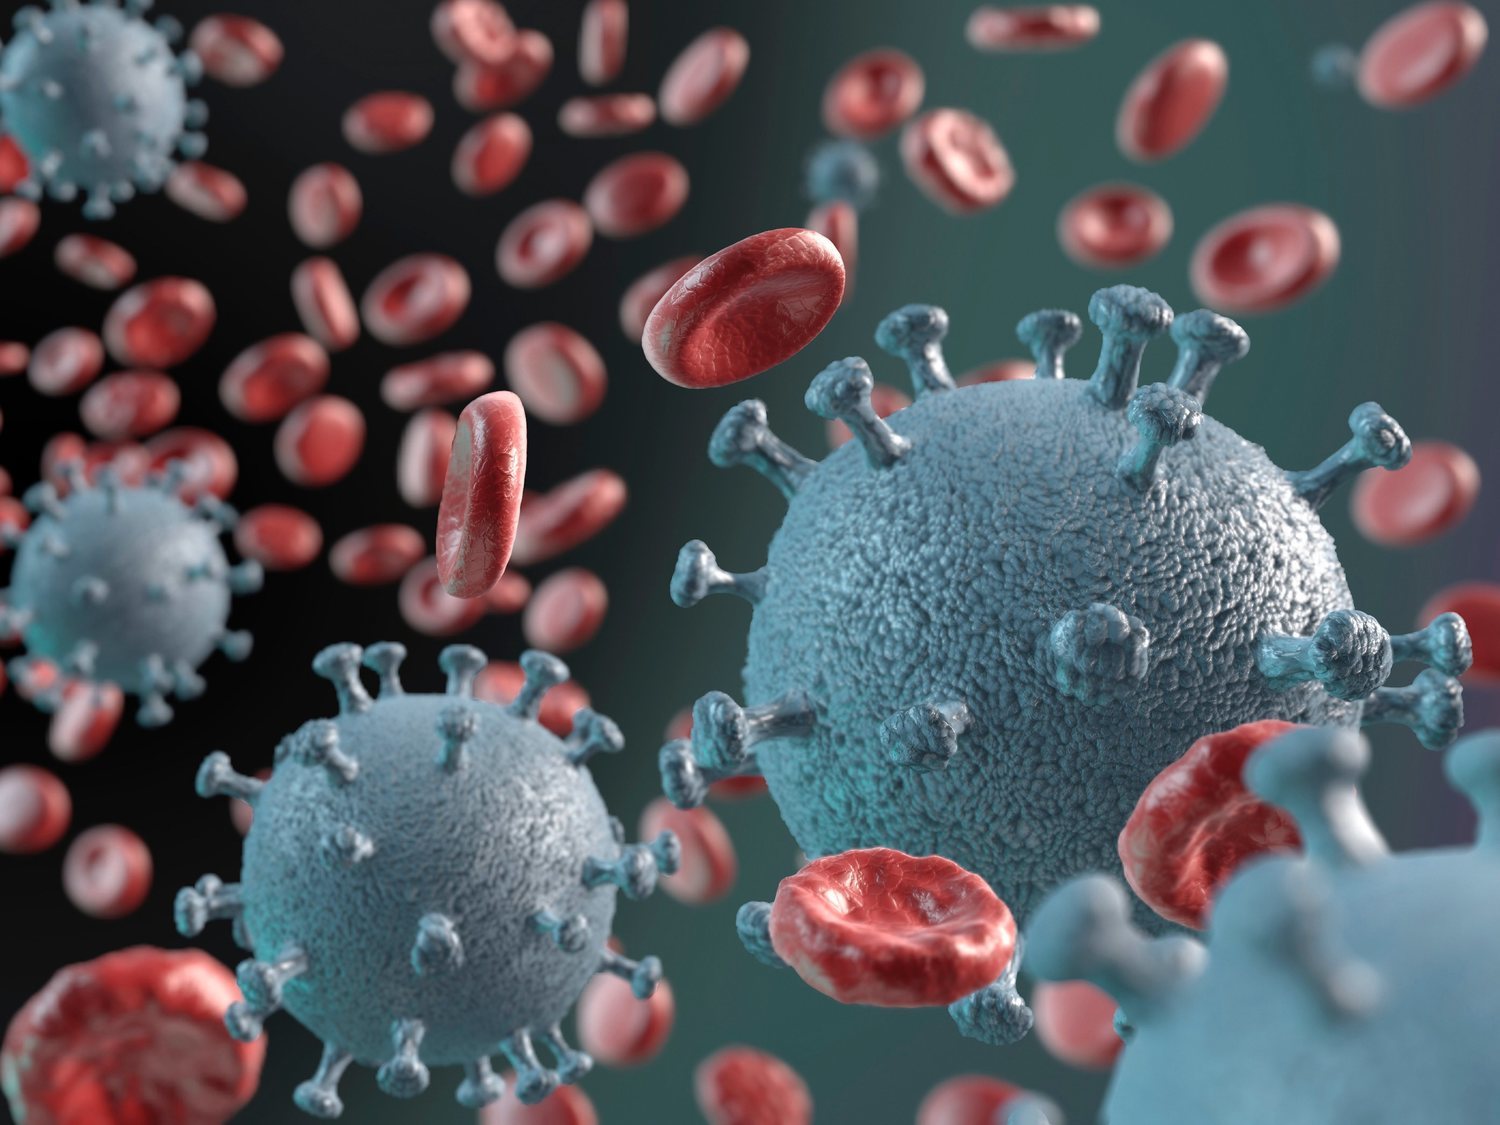 Aparece una nueva cepa del coronavirus mucho más contagiosa, que podría poner en peligro la vacuna